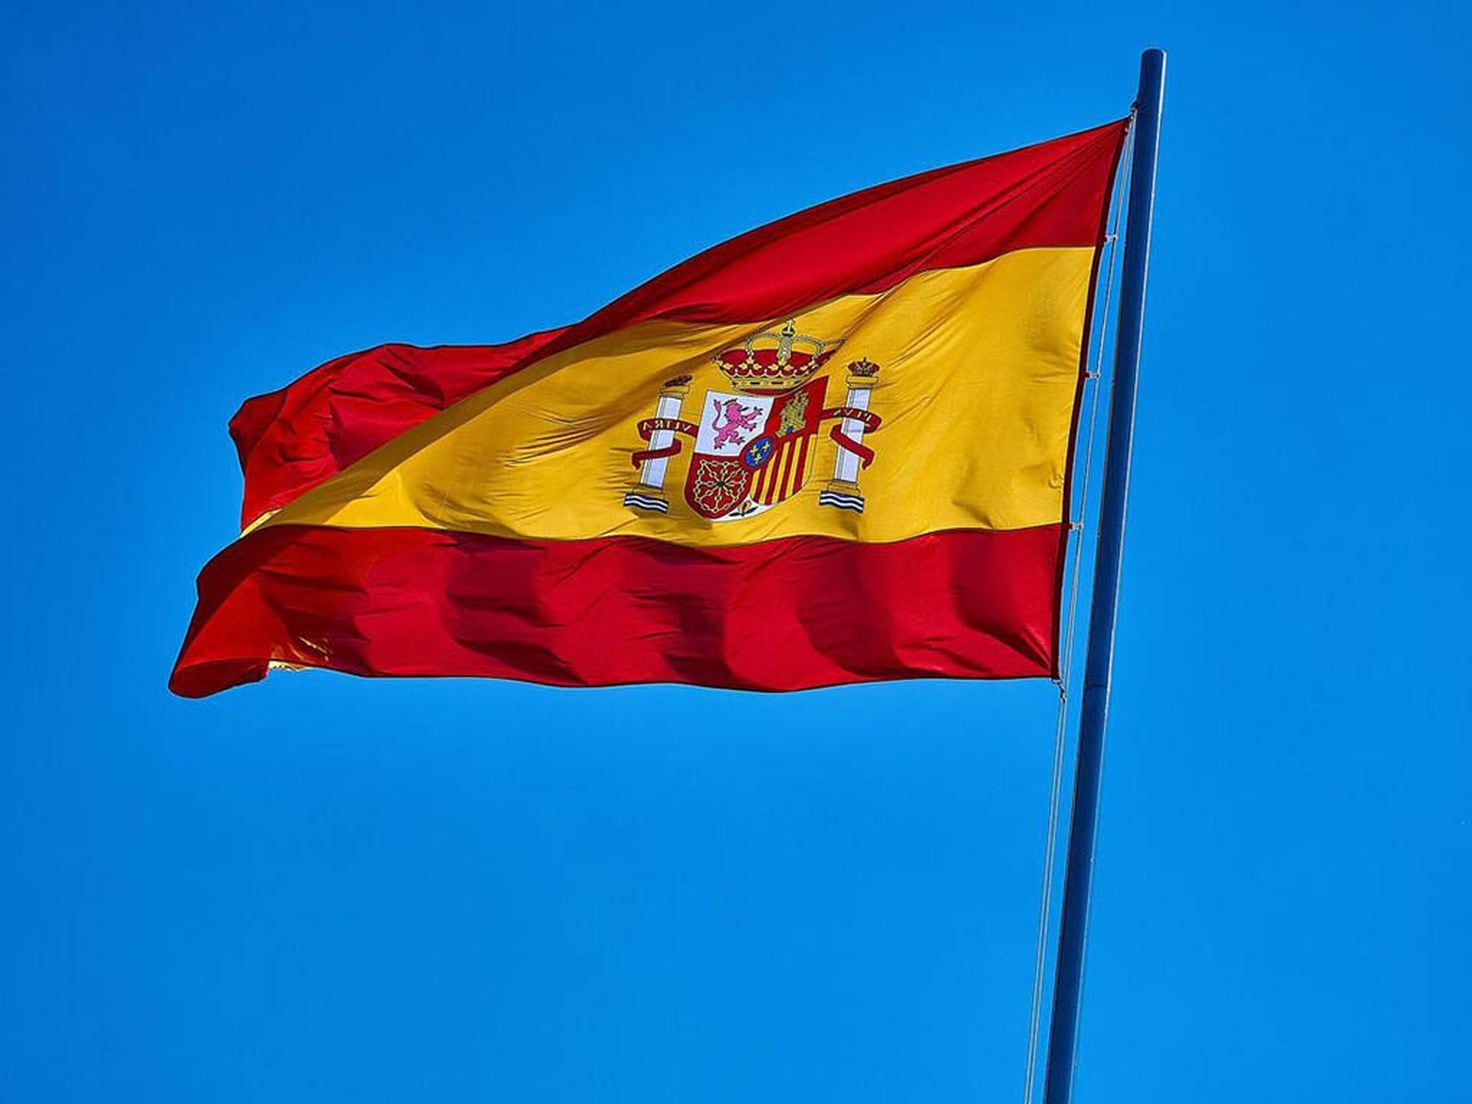 Banderas España y Comunidad Europea